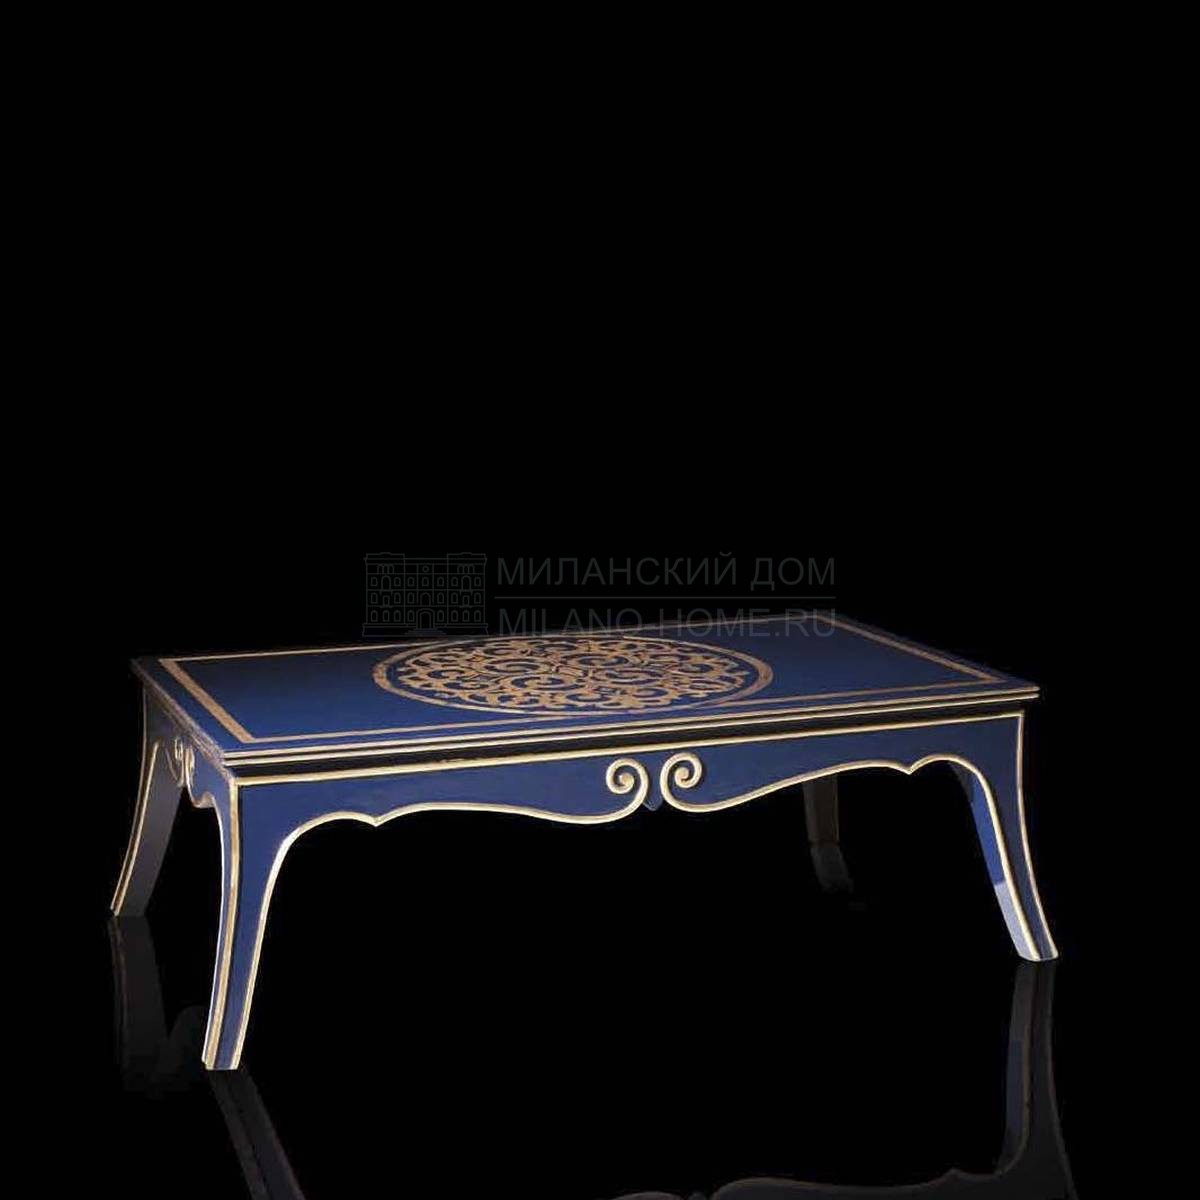 Кофейный столик FC 0704 Strass/central table из Италии фабрики ASNAGHI INTERIORS